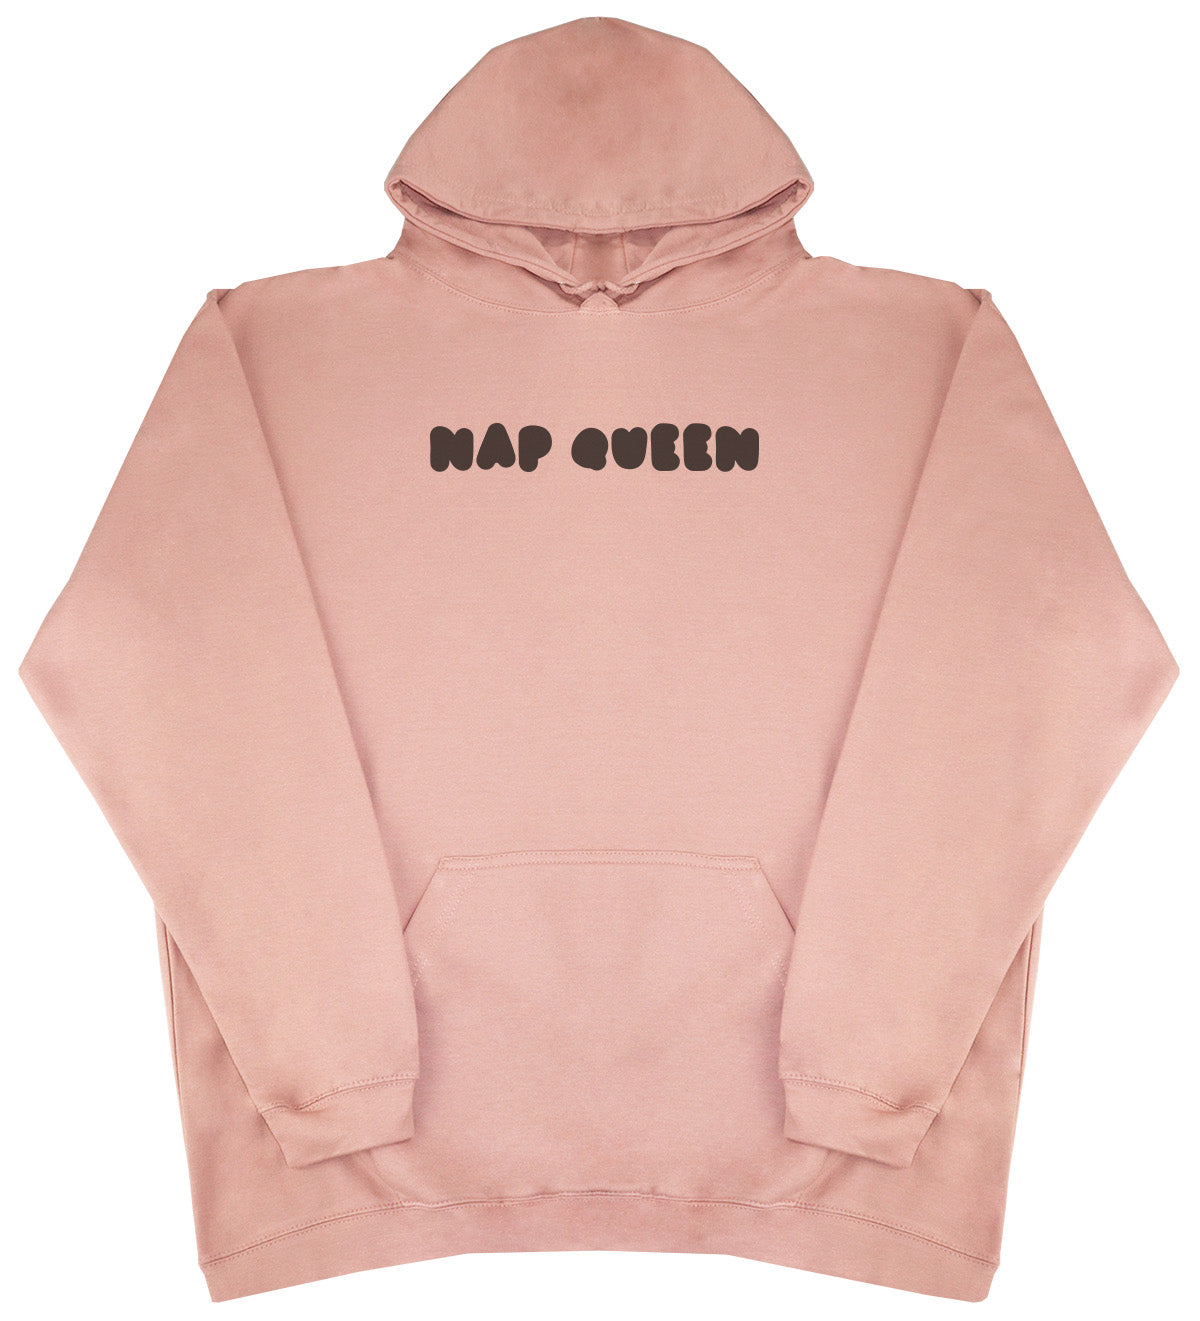 Nap Queen - Huge Oversized Comfy Original Hoody